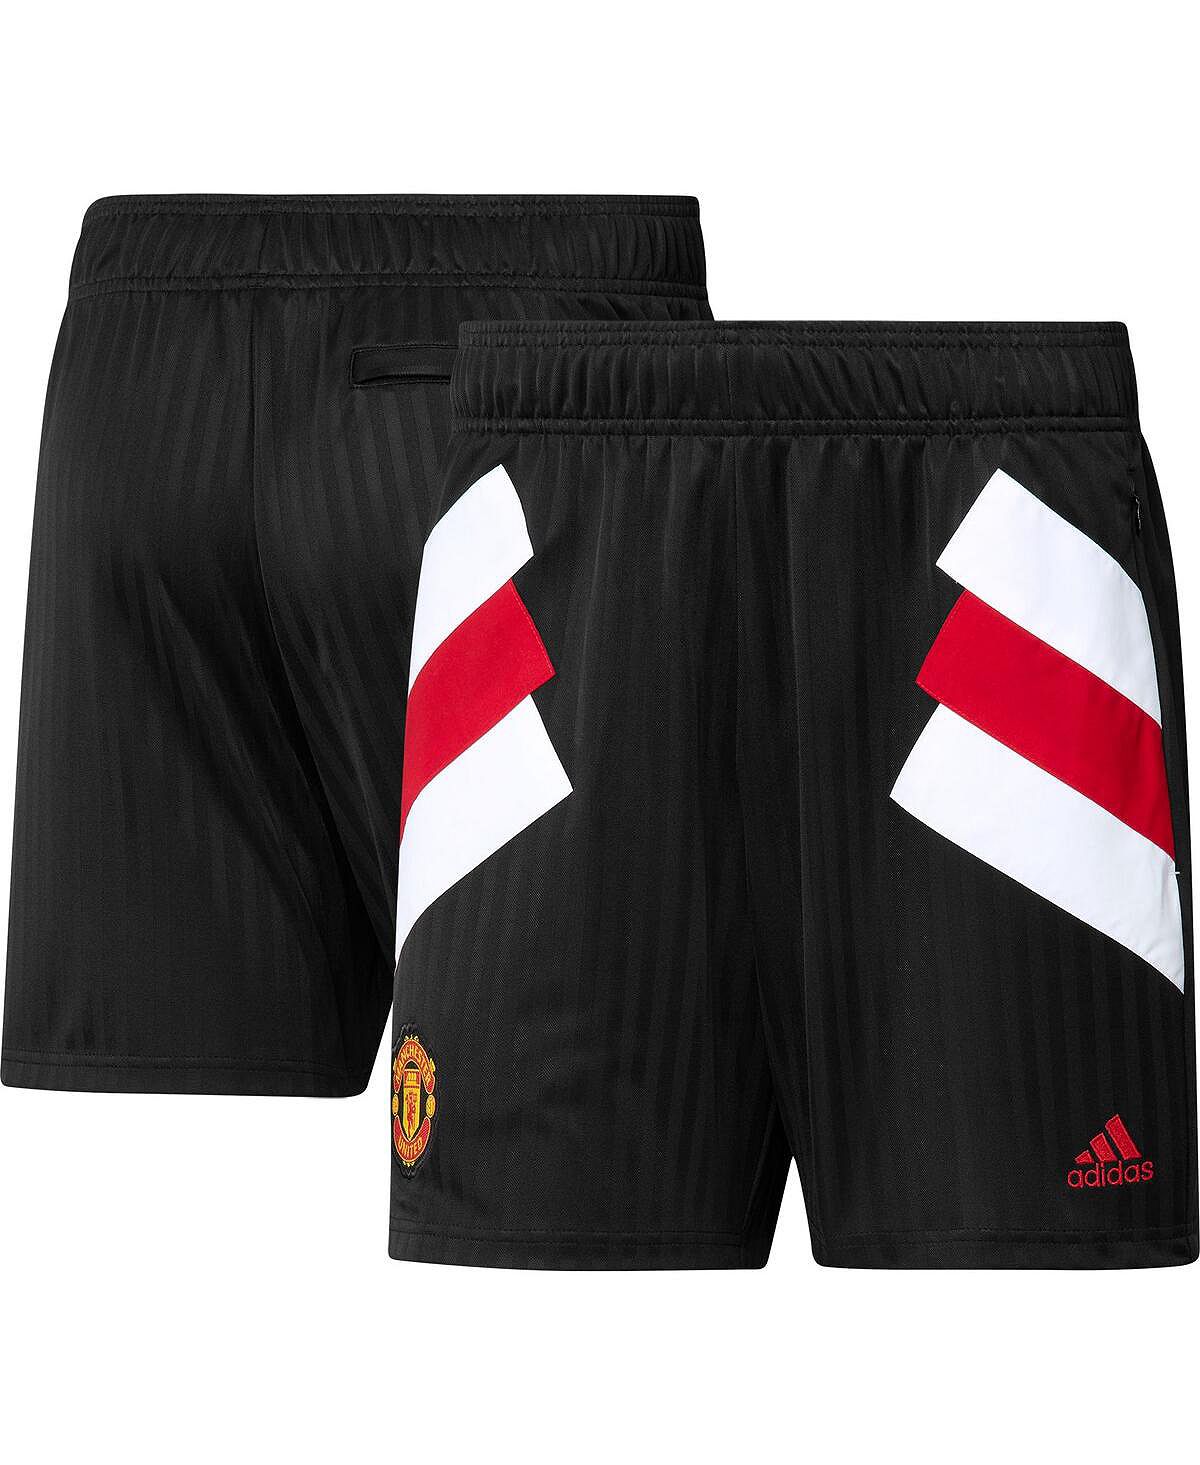 цена Мужские черные шорты Manchester United Football Icon adidas